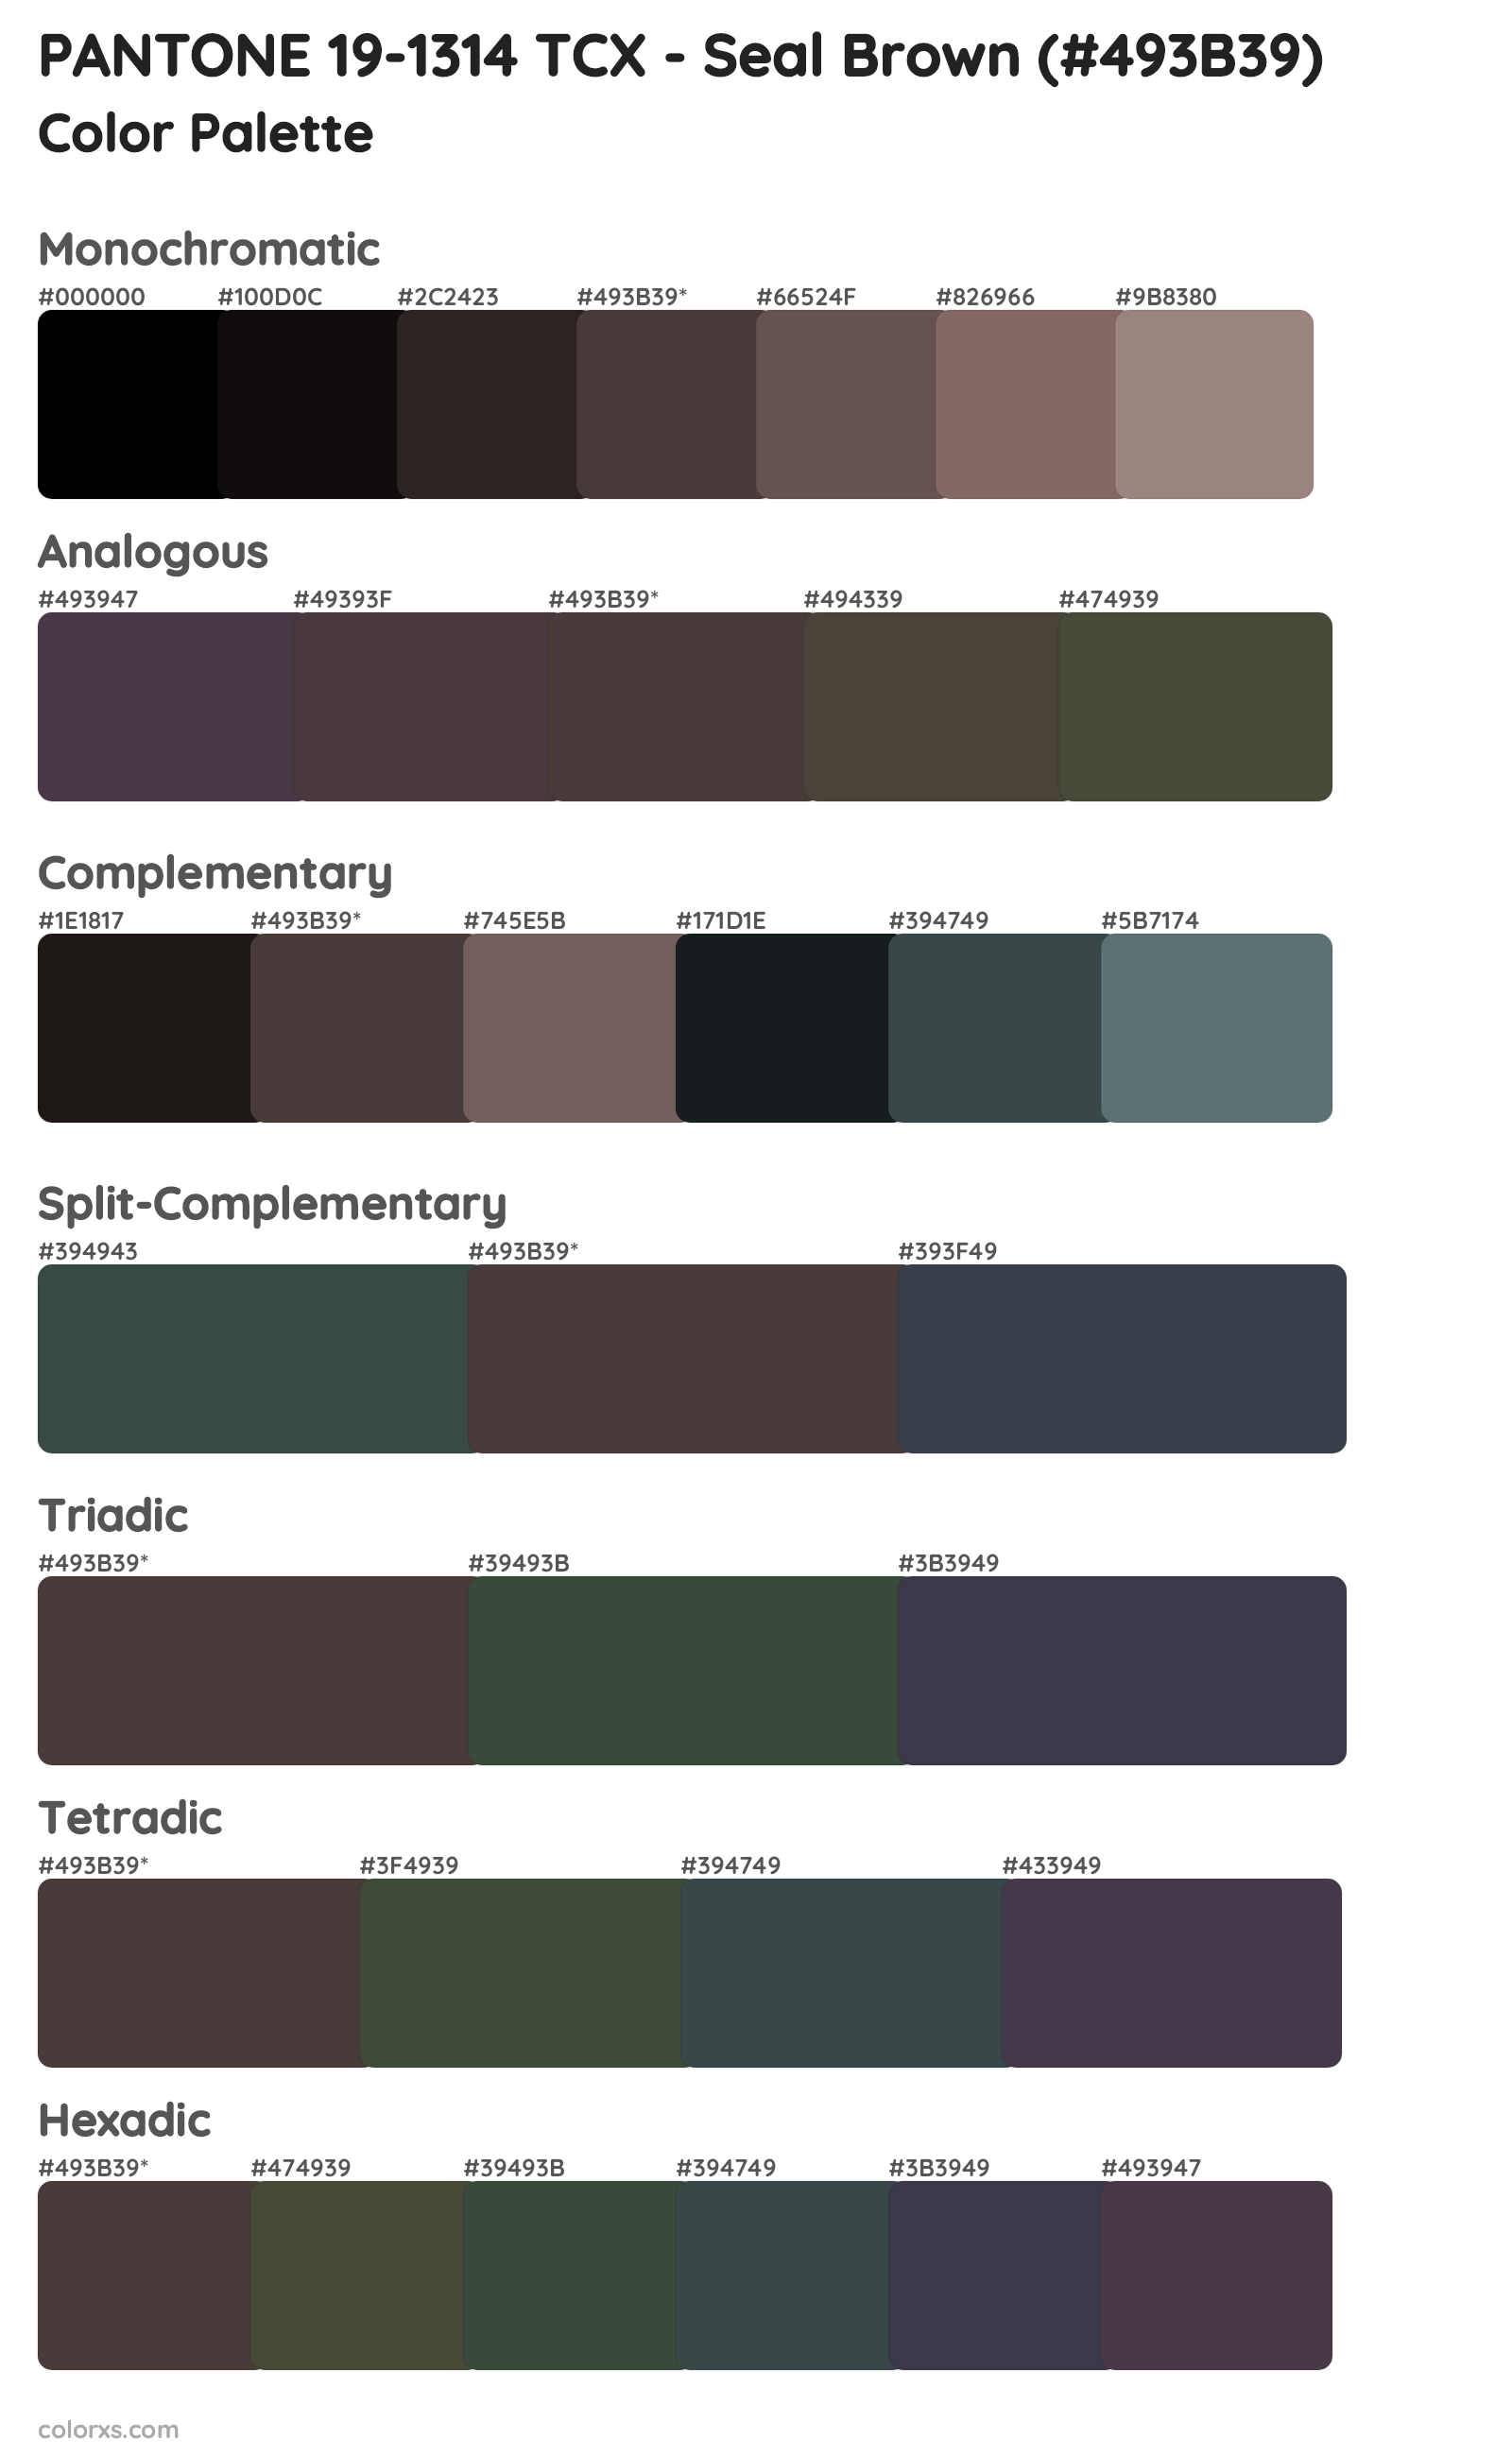 PANTONE 19-1314 TCX - Seal Brown Color Scheme Palettes